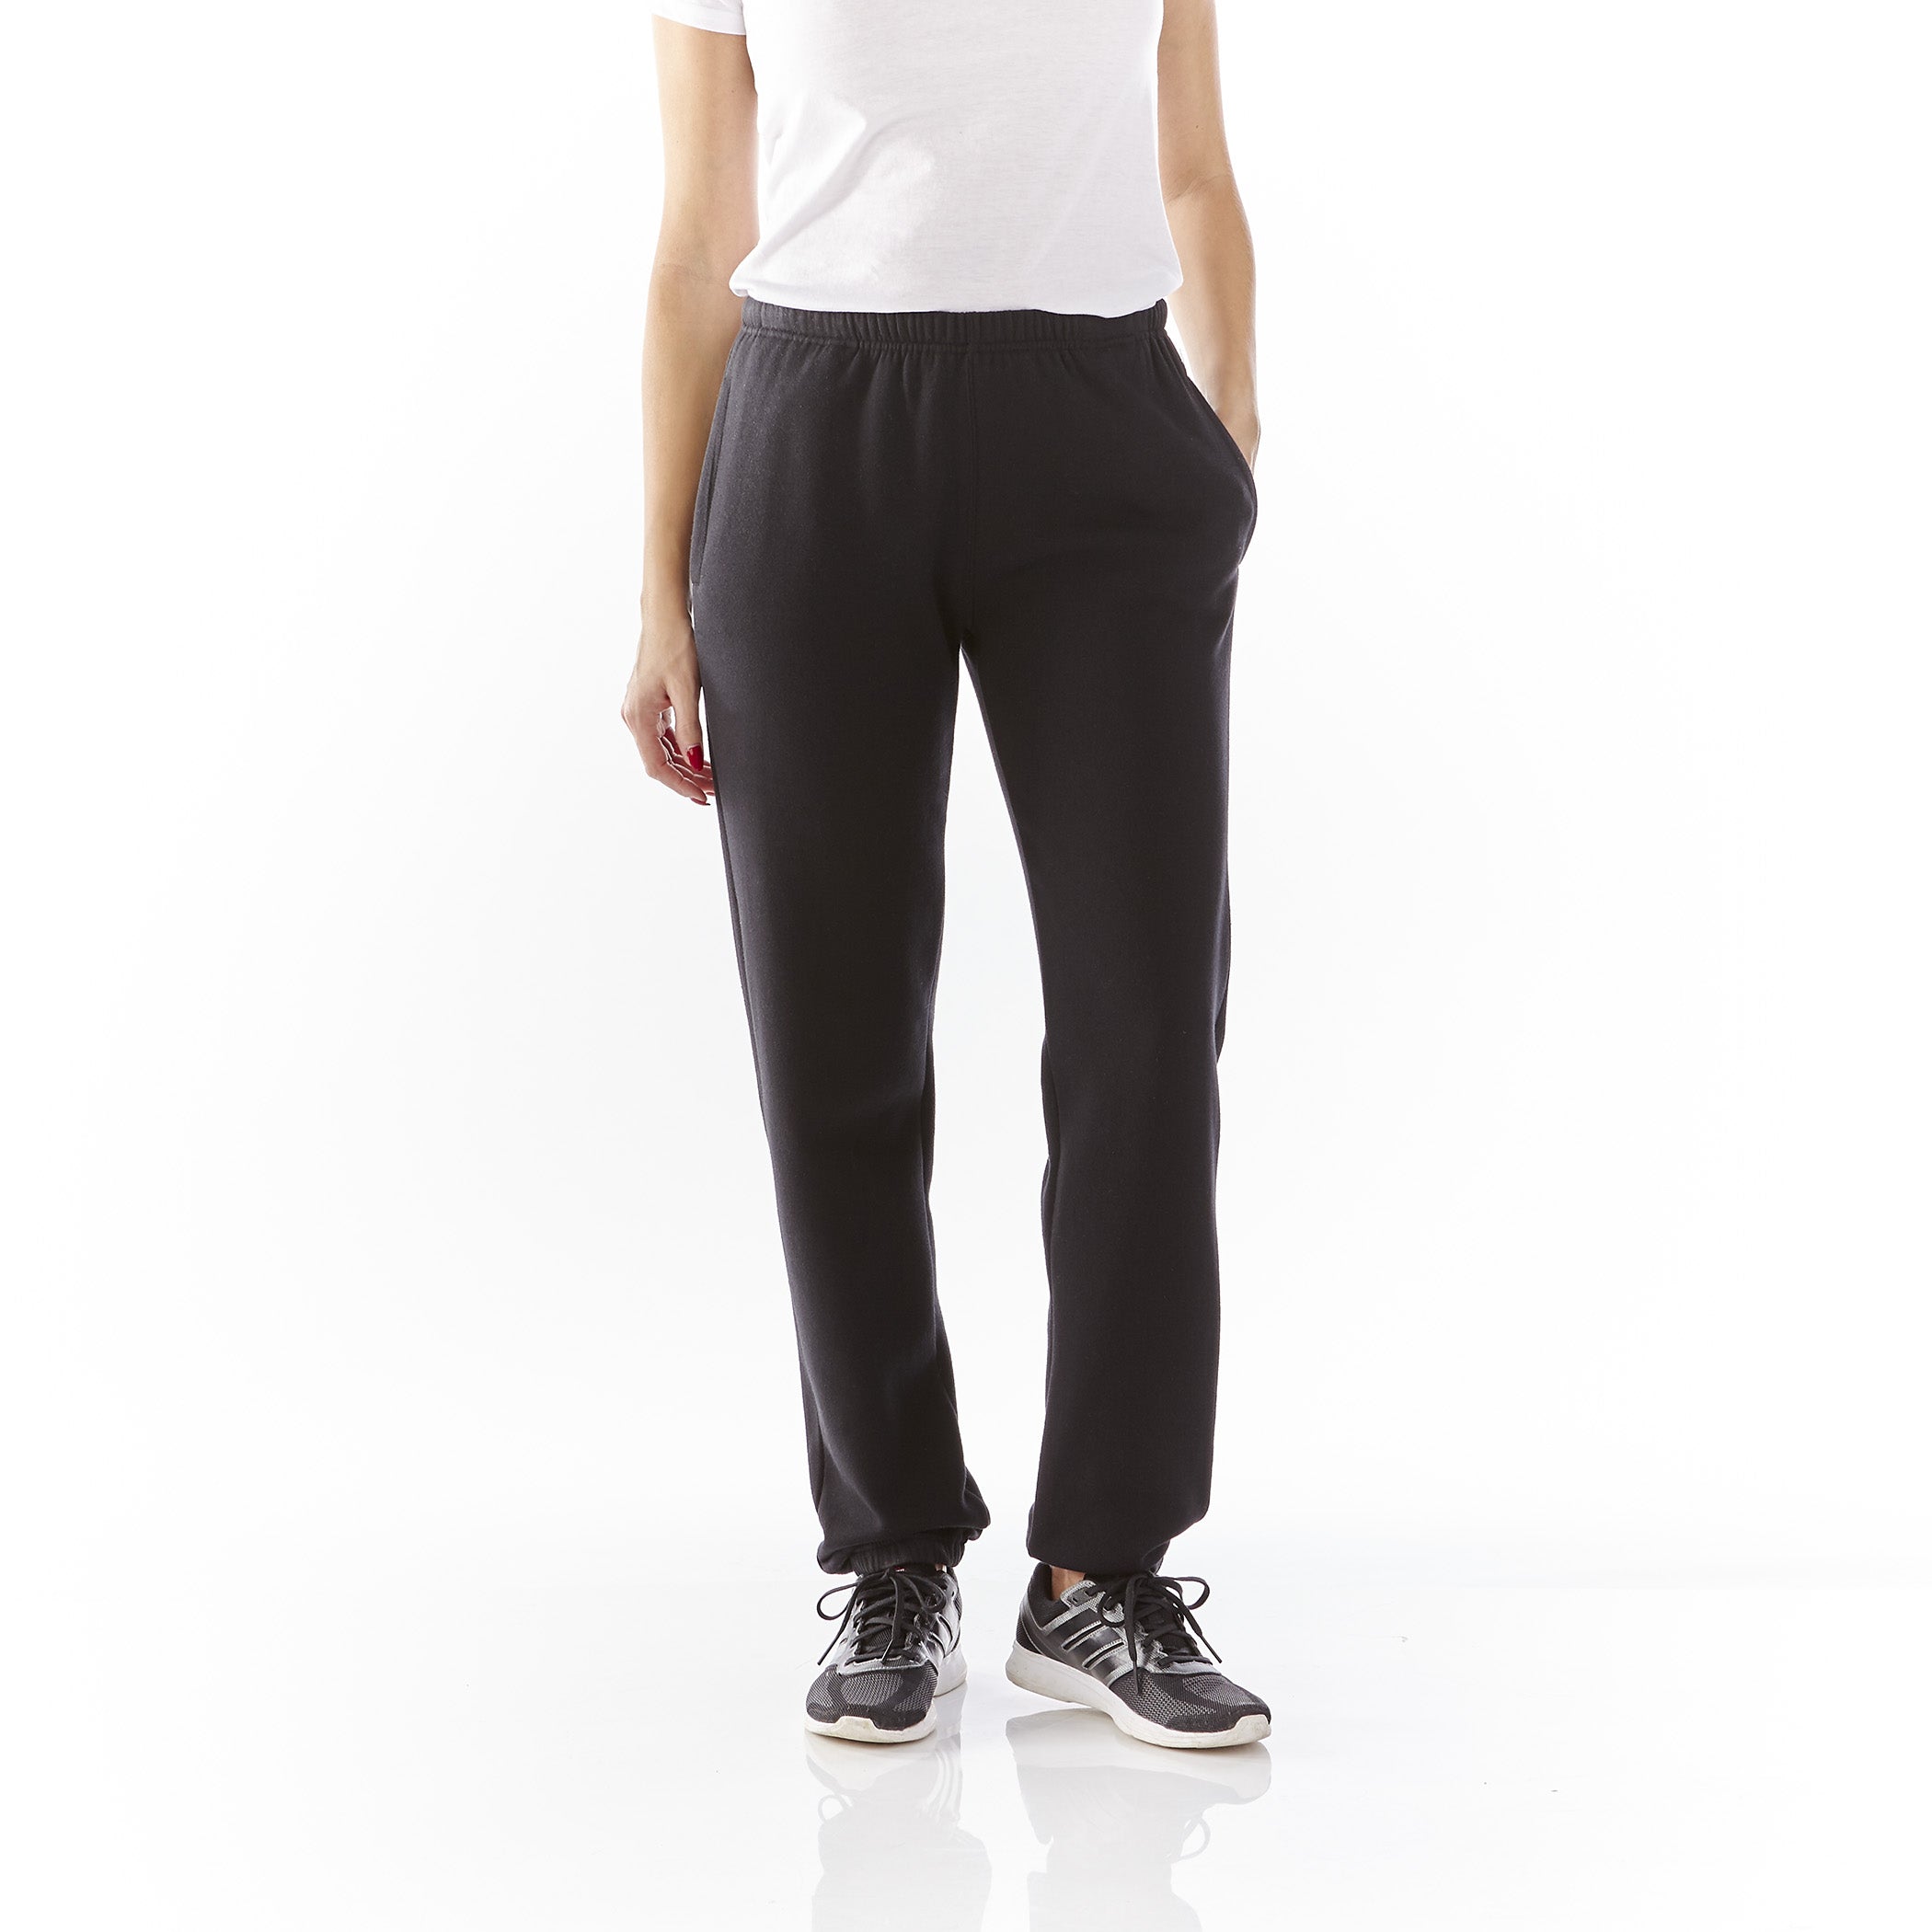 Women's Sweatpants Joggers Corduroy Fleece lined Black Grey Black Beig -  🎅Winter Discount Shop